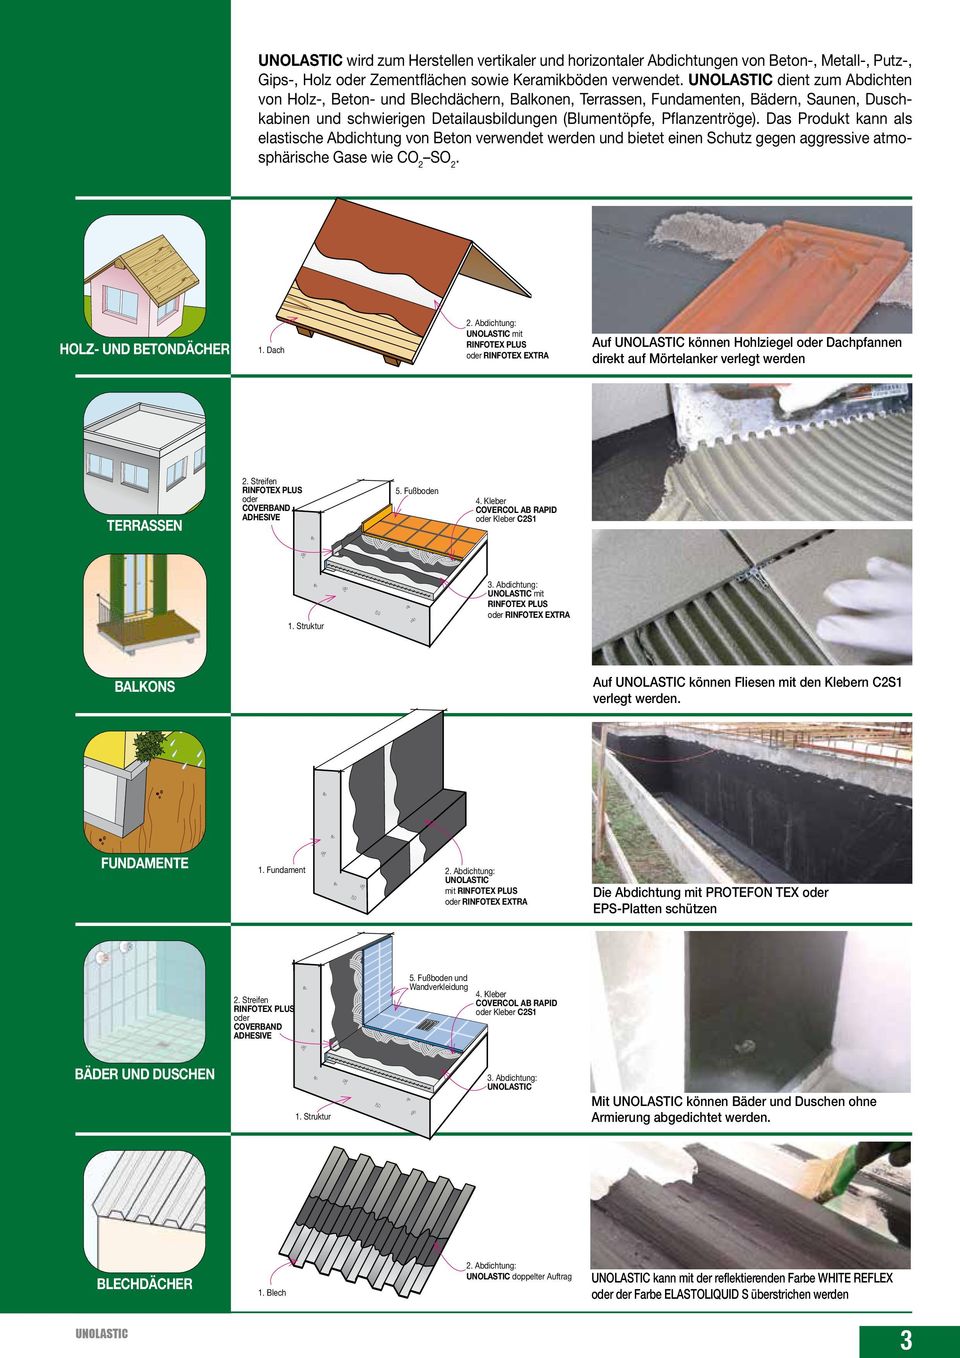 Das Produkt kann als elastische Abdichtung von Beton verwendet werden und bietet einen Schutz gegen aggressive atmosphärische Gase wie CO SO. HOLZ- UND BETONDÄCHER 1. Dach.